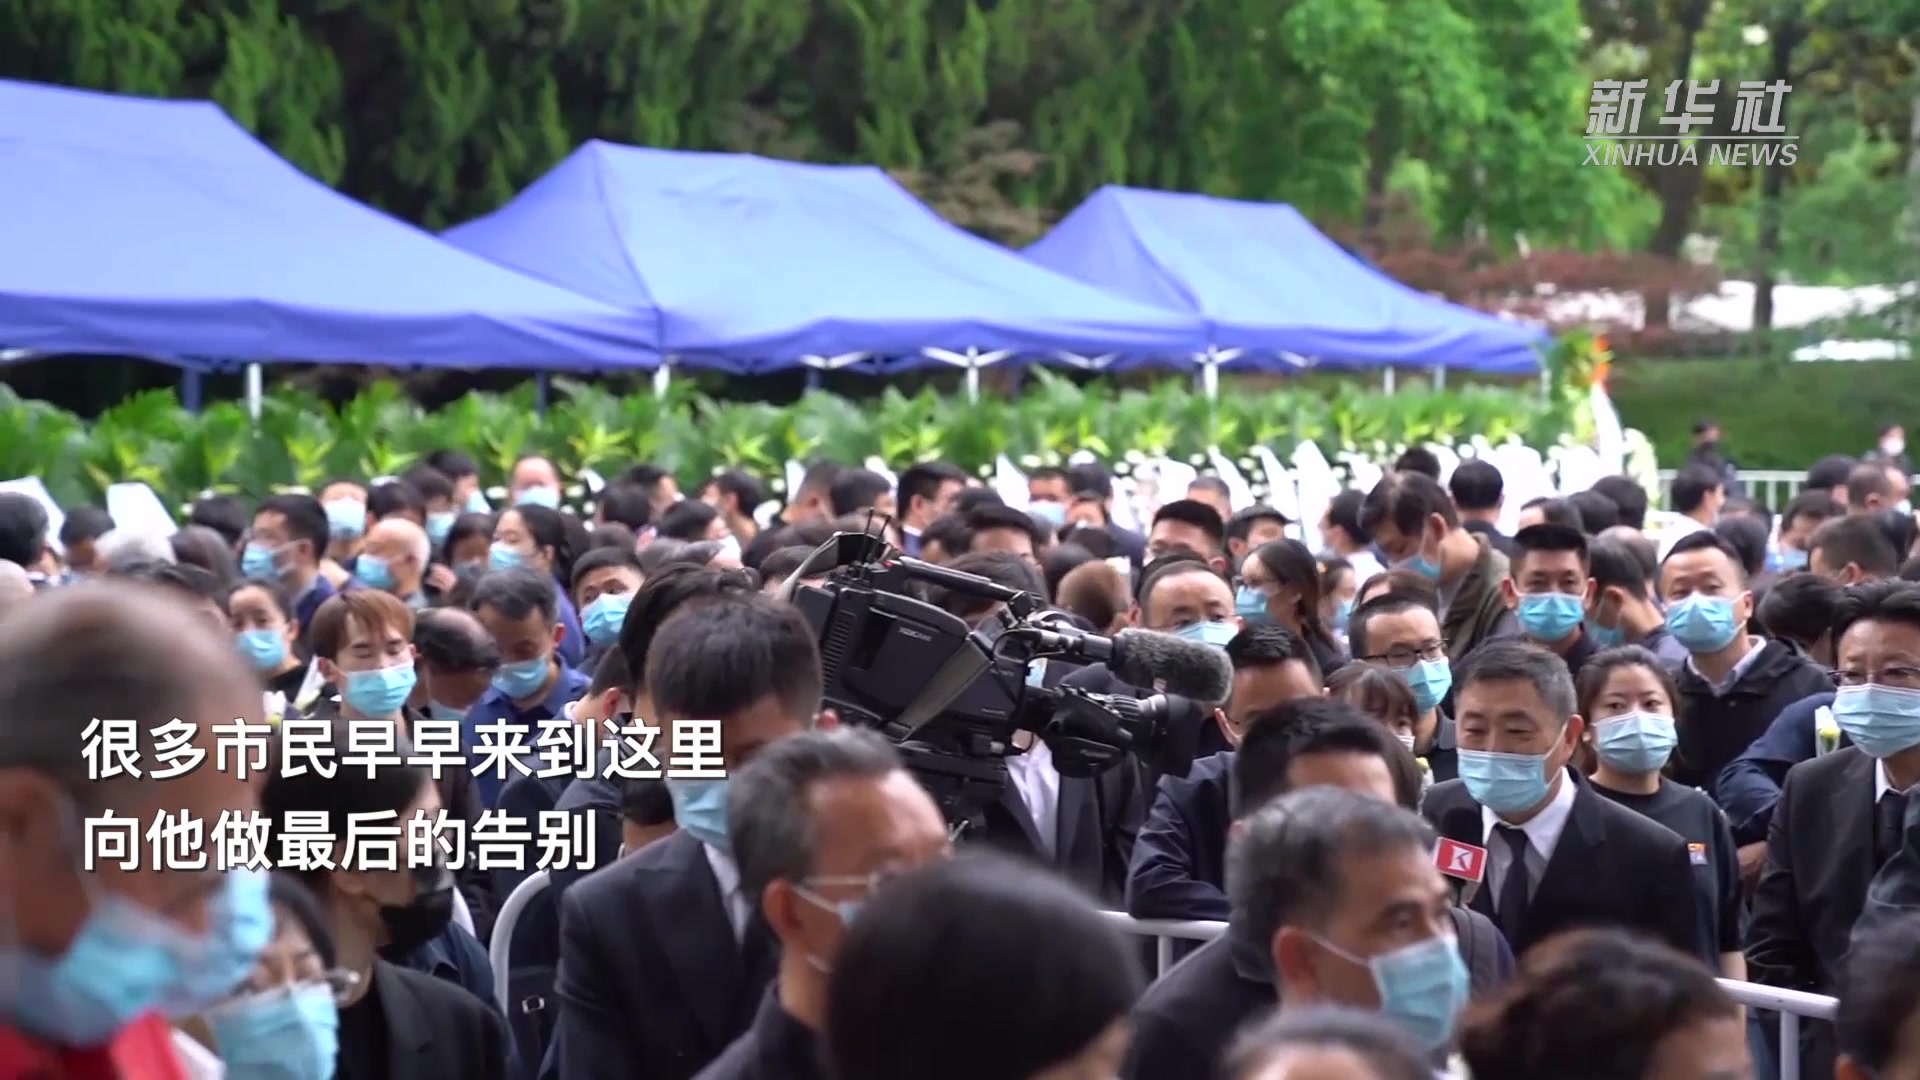 民众雨中送别 希望中国赠送一对大熊猫 韩国大邱市长提出 饲养员哭成泪人 福宝 此